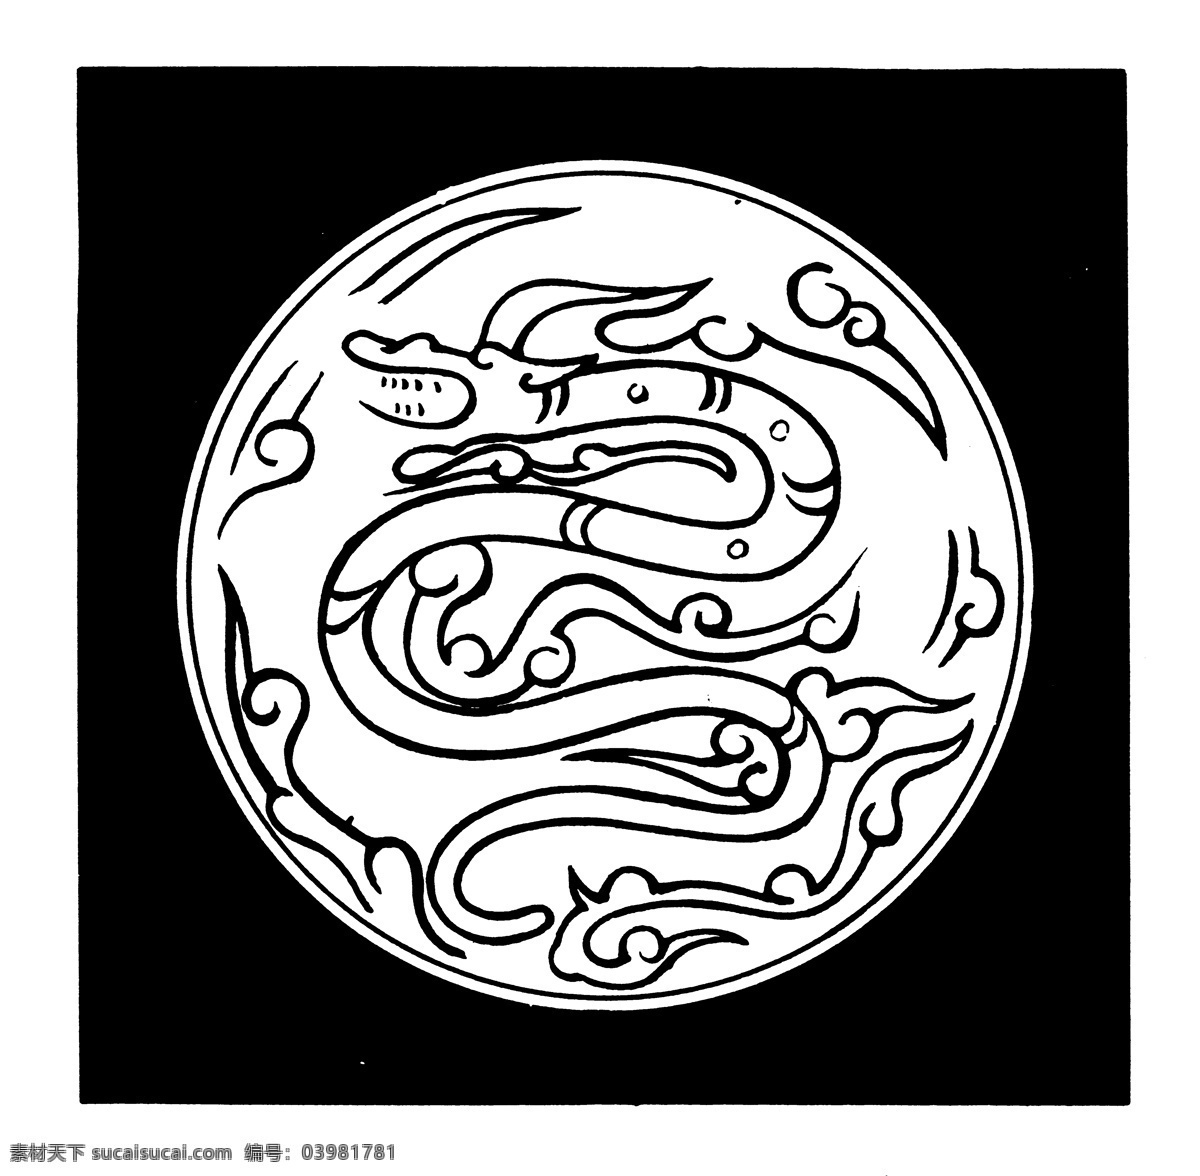 龙凤图案 魏晋 南北朝 图案 中国 传统 37 中国传统图案 设计素材 龙凤图纹 装饰图案 书画美术 白色